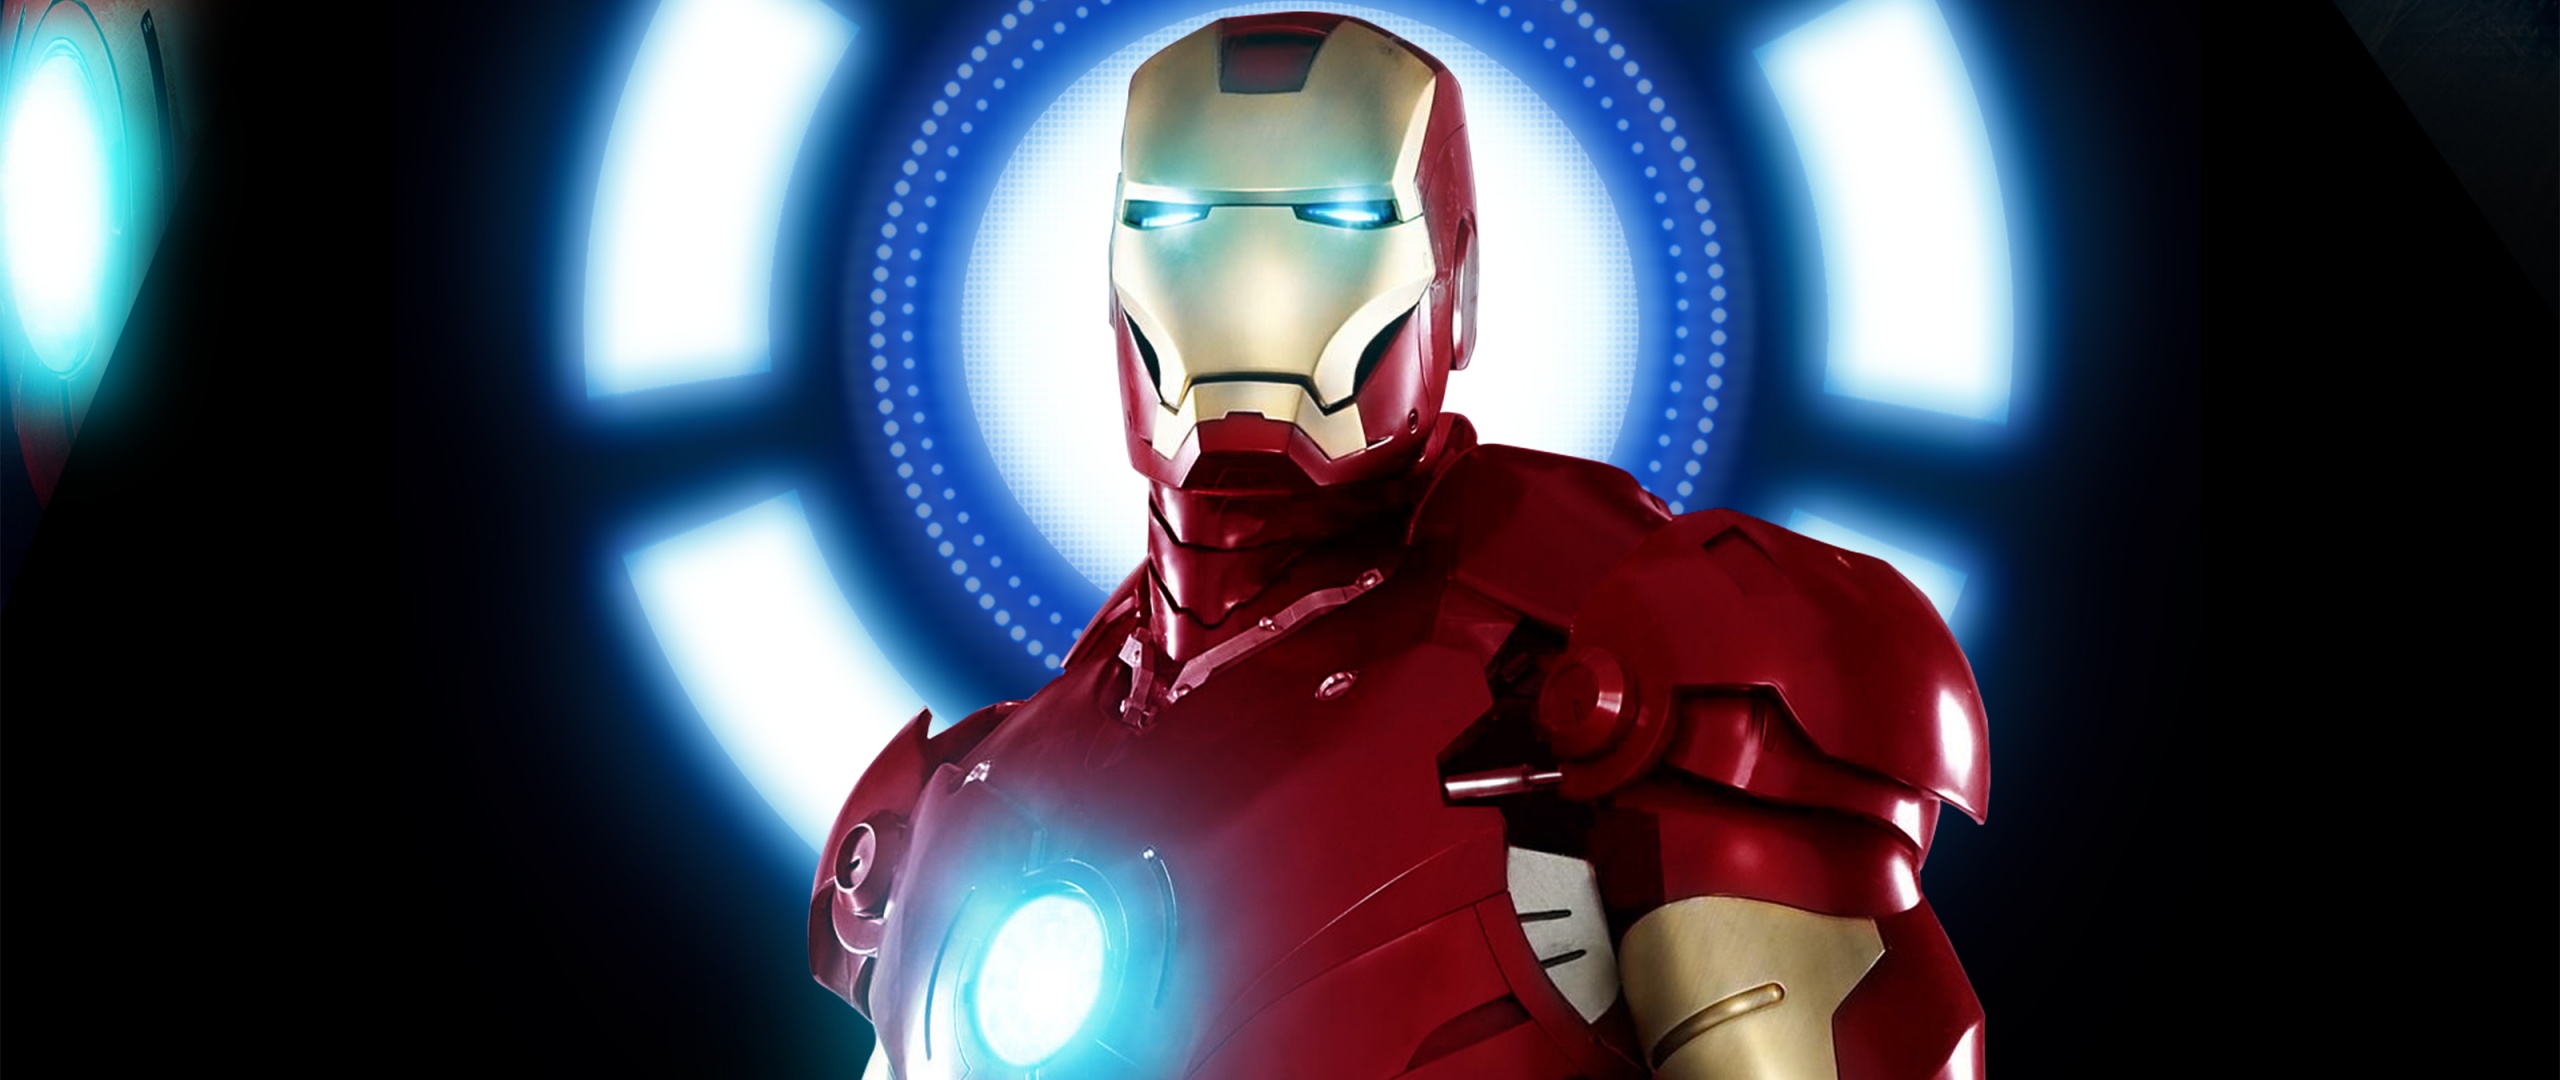 Bạn là fan của Iron Man? Hãy xem hình nền Iron Man 4K siêu đẹp này để trang trí cho máy tính hay điện thoại của mình thêm phong cách và sôi động hơn nhé! Bạn sẽ chẳng thể rời mắt khỏi thiết kế tuyệt vời này của Iron Man đâu.